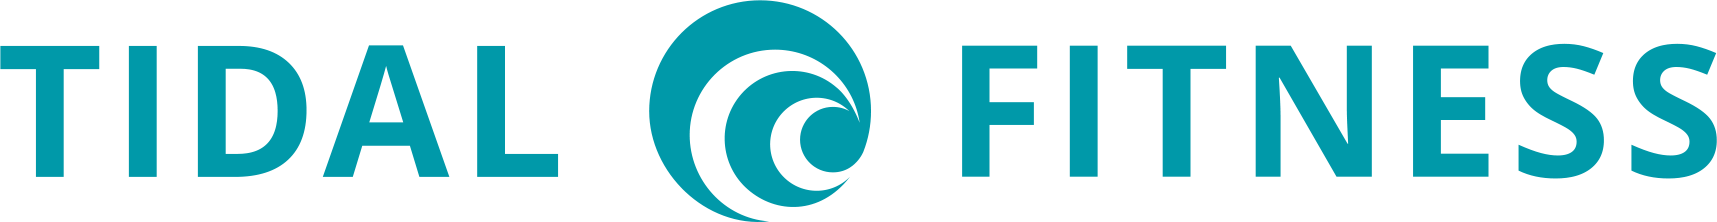 Tidal Fitness logo